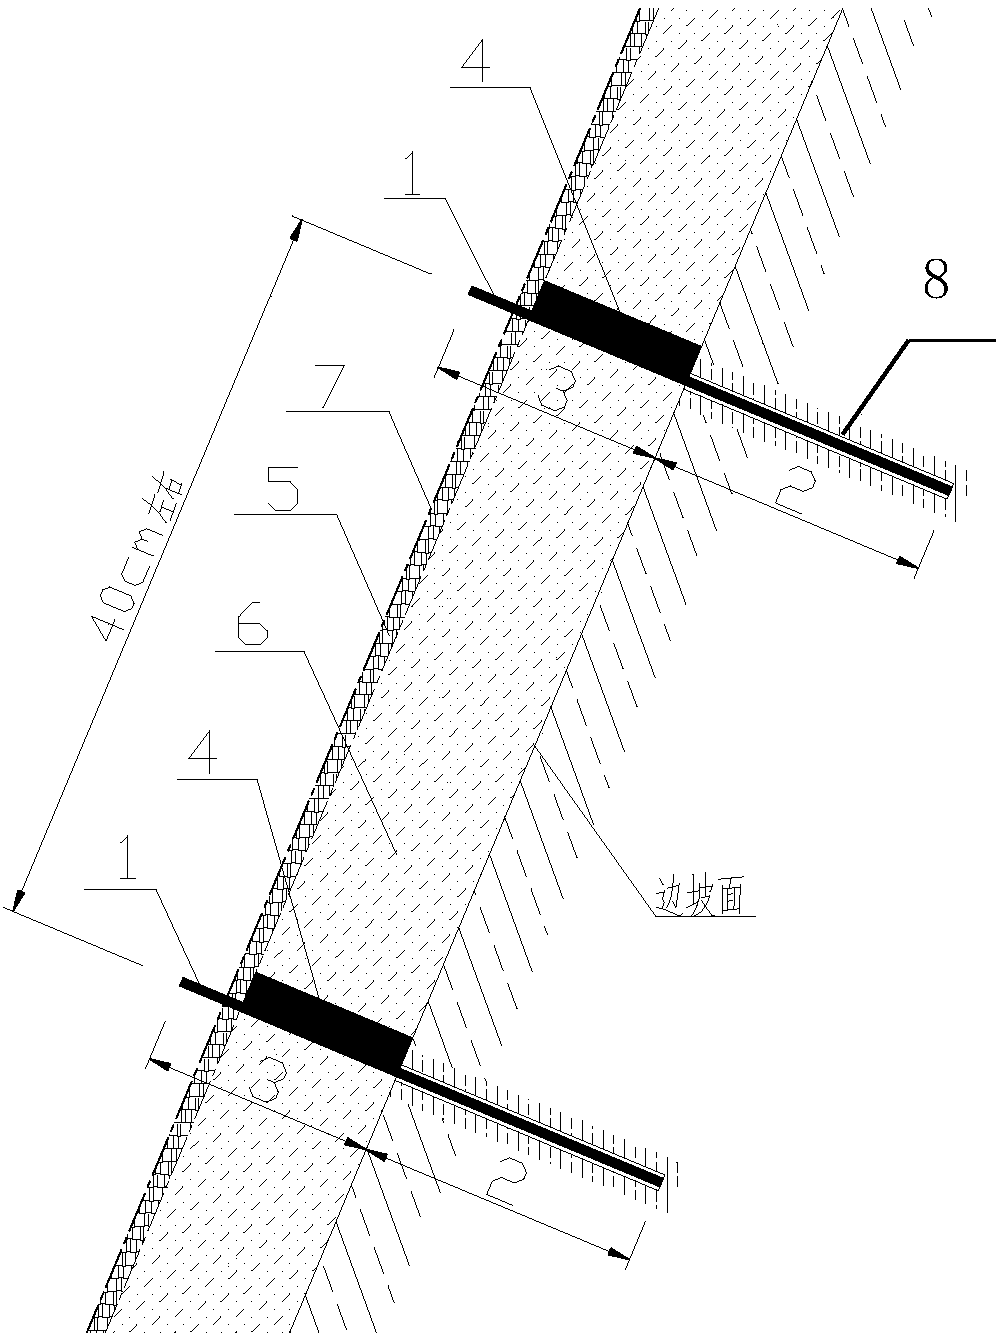 Novel method for plant covering of side slope of large strip mine